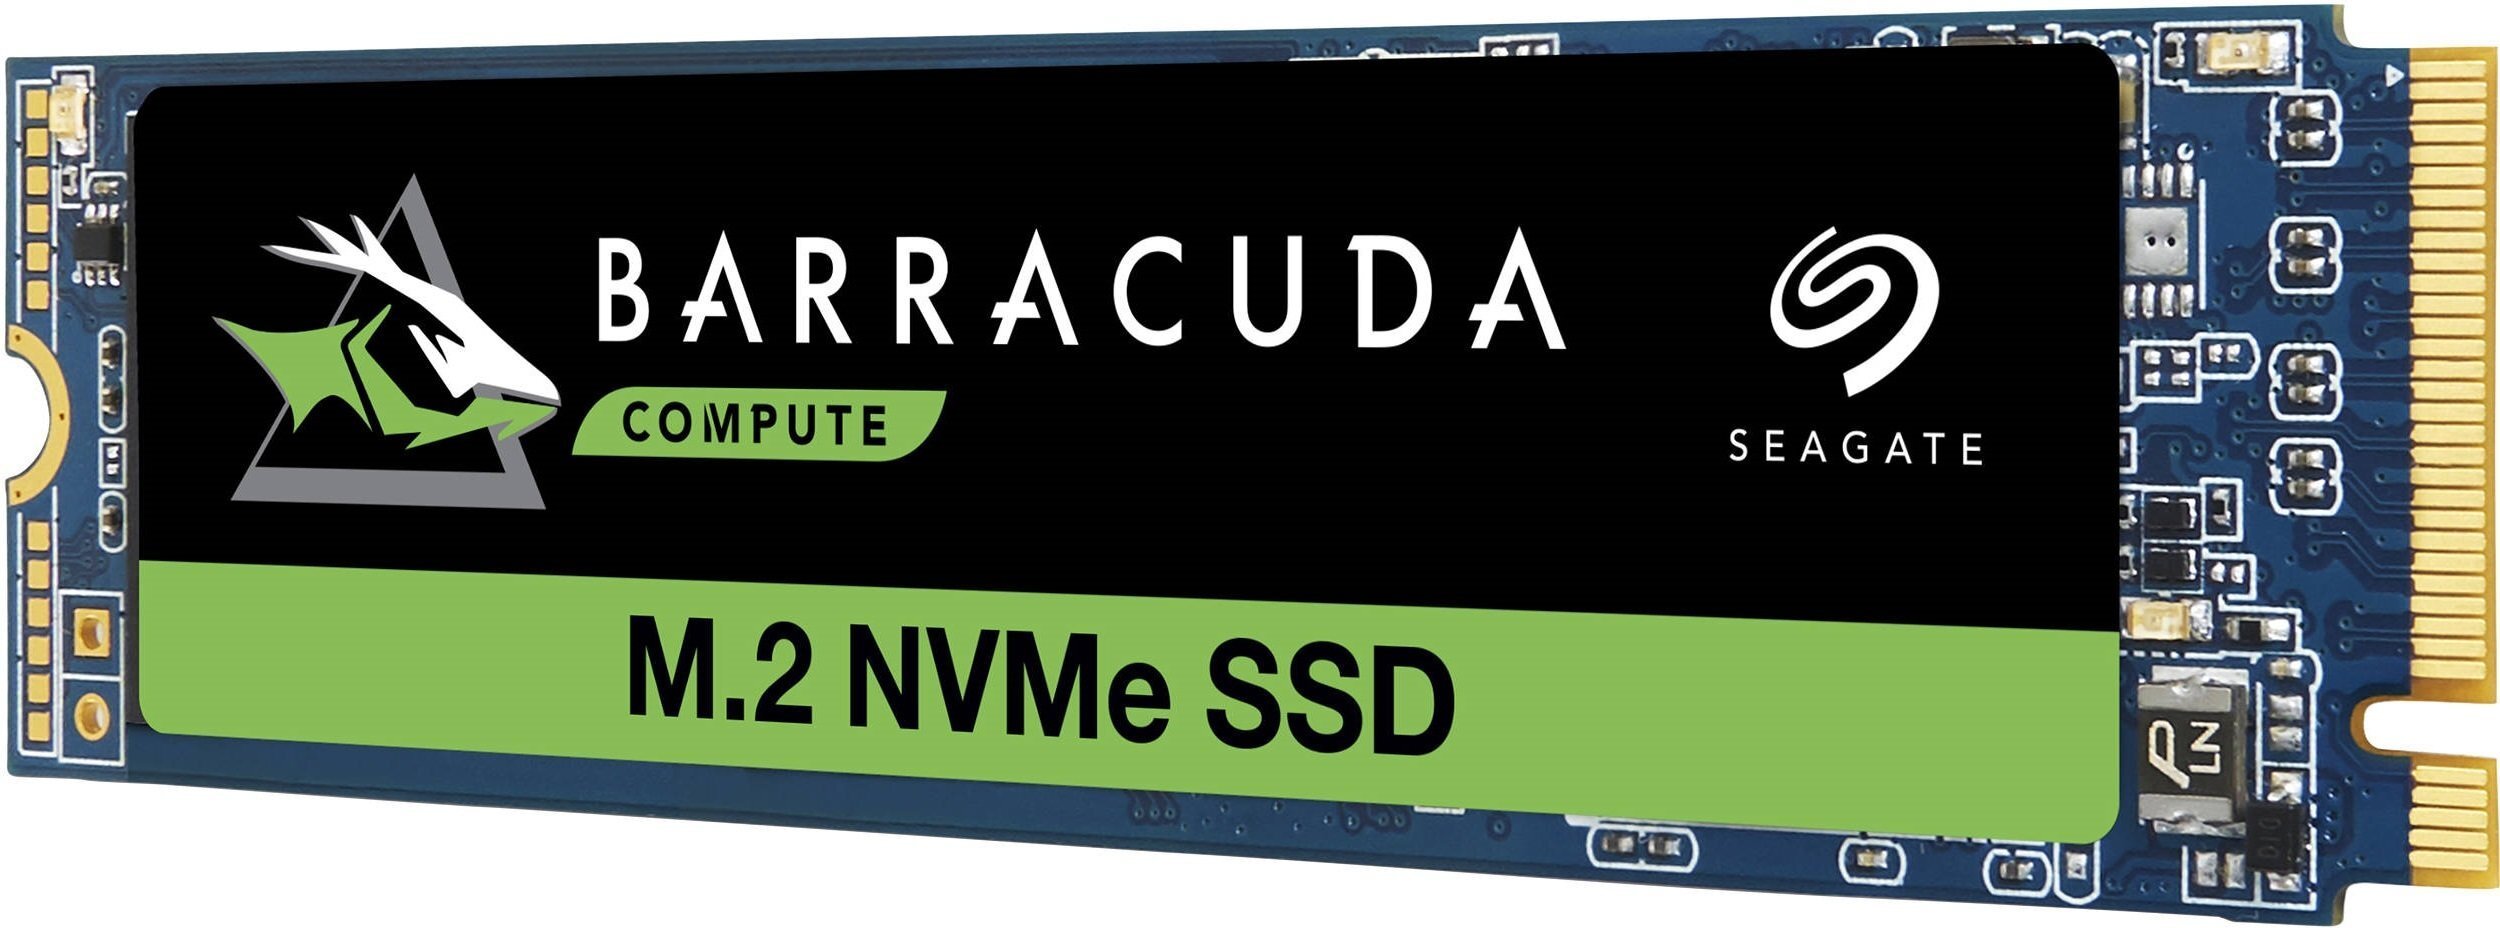 Твердотельный накопитель SSD Seagate M.2 NVMe PCIe 3.0 x4 256GB 2280 Barracuda 510 фото 1